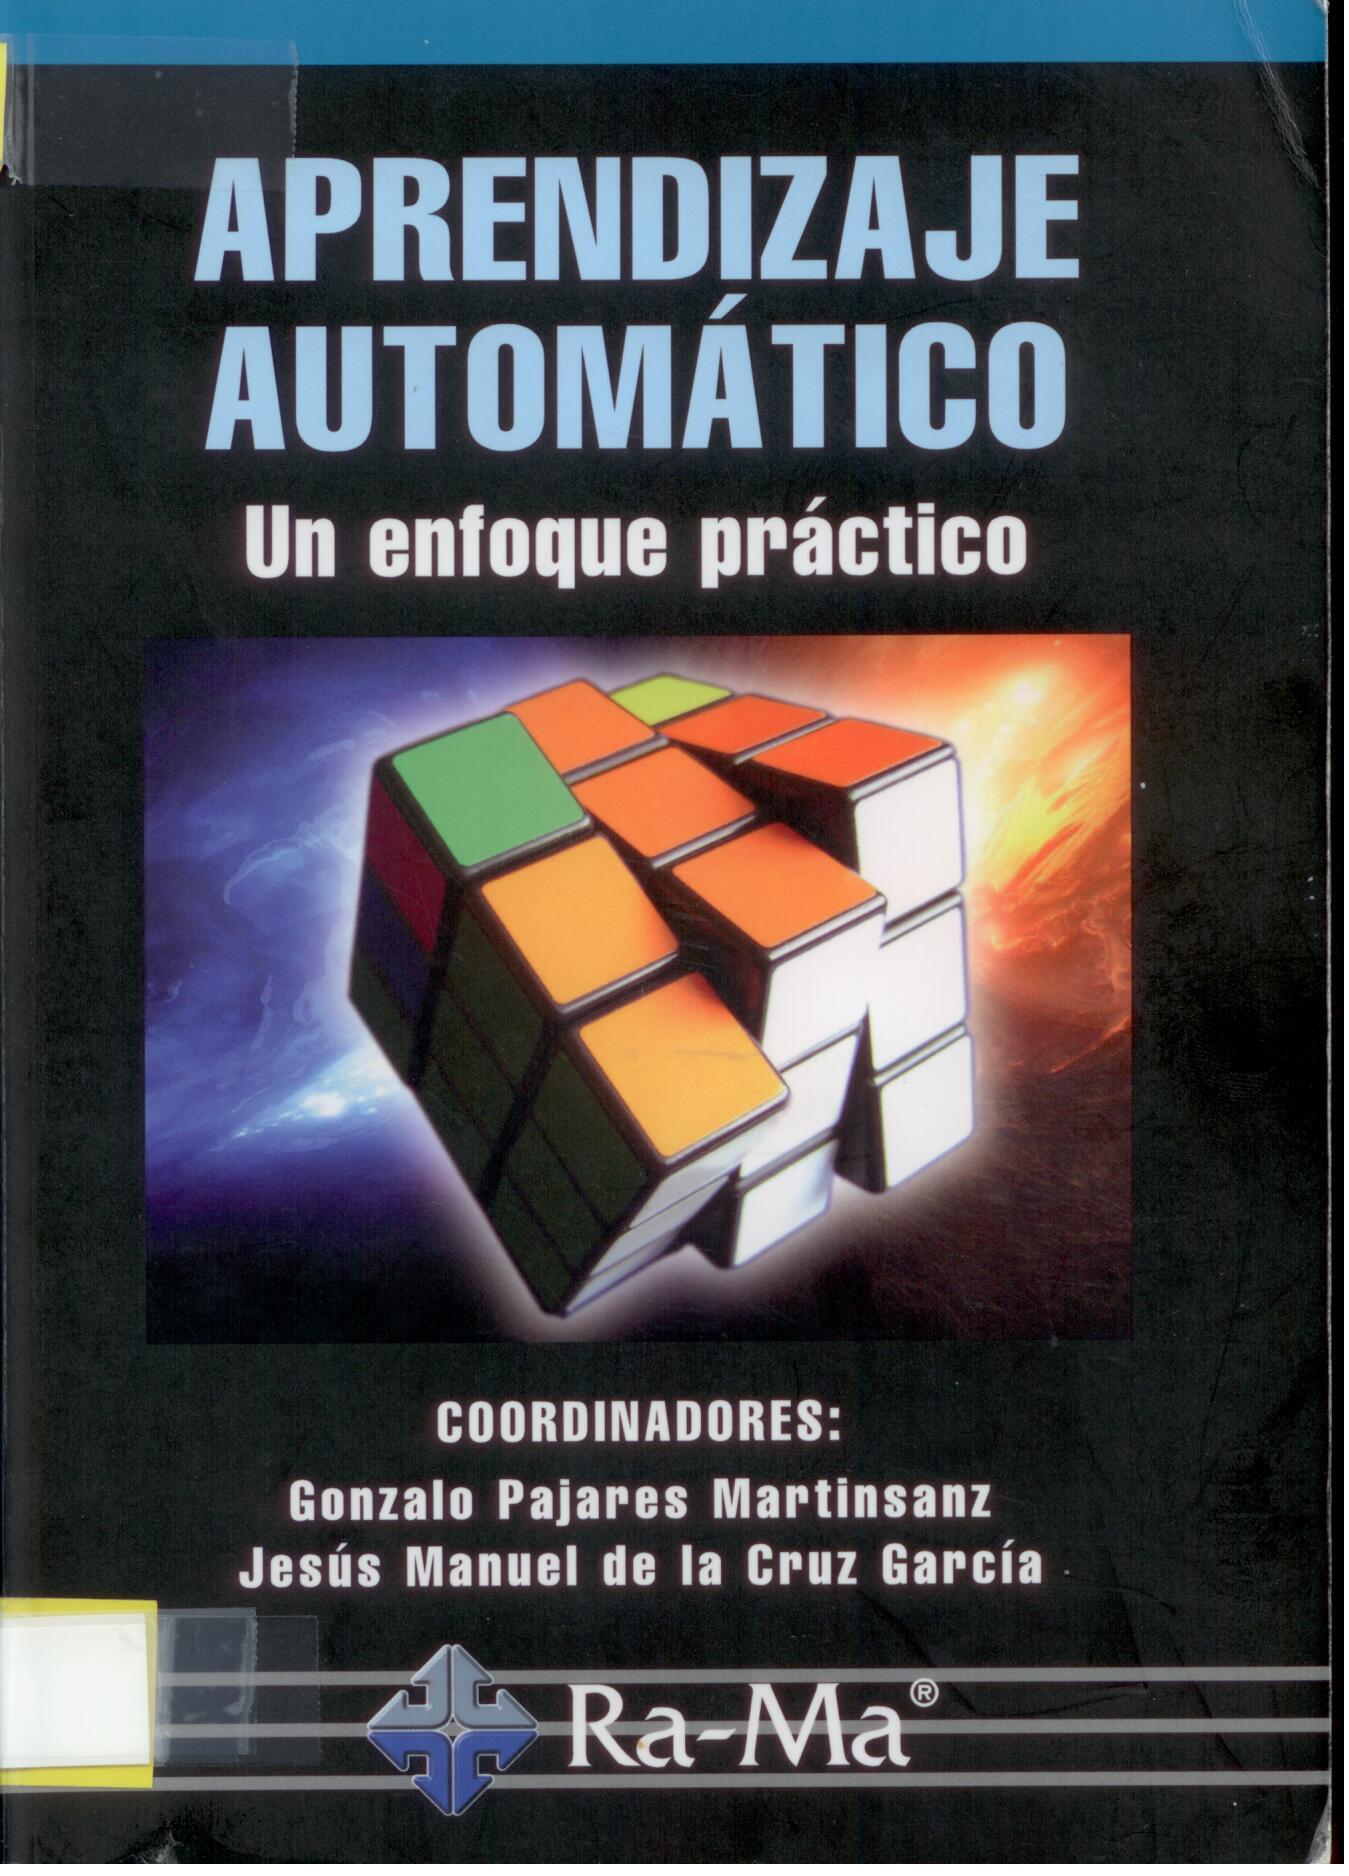 Imagen de portada del libro Aprendizaje automático